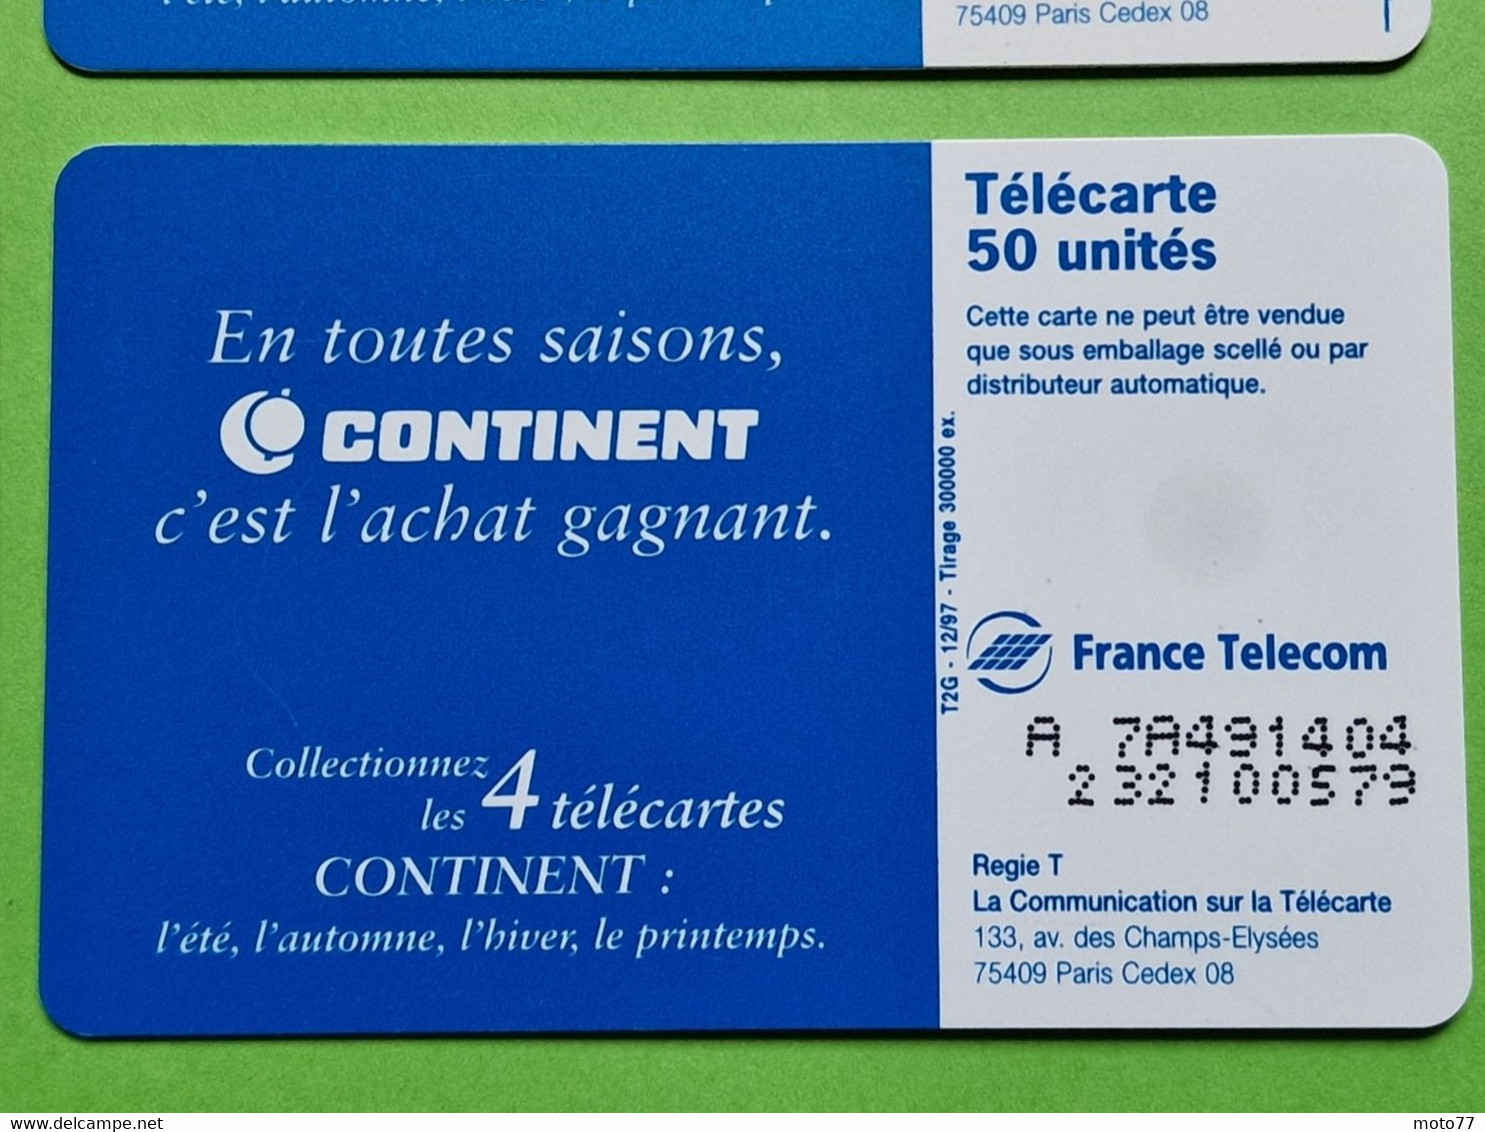 Lot série des 4 cartes téléphonique de France - VIDE - Télécarte Cabine téléphone - CONTINENT - Les 4 saisons - 1997 98